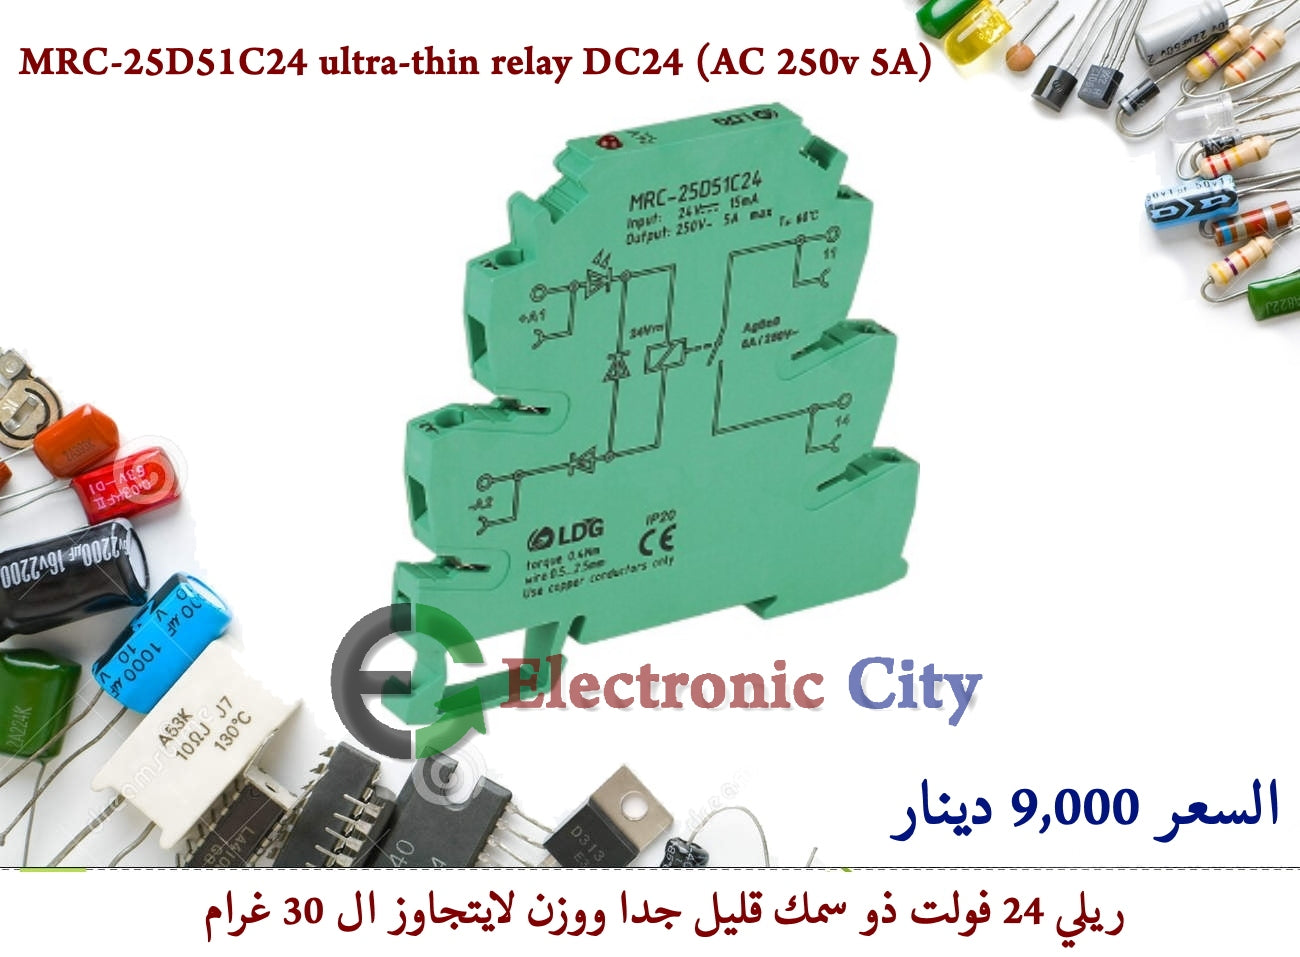 MRC-25D51C24 ultra-thin relay DC24 (AC 250v 5A)